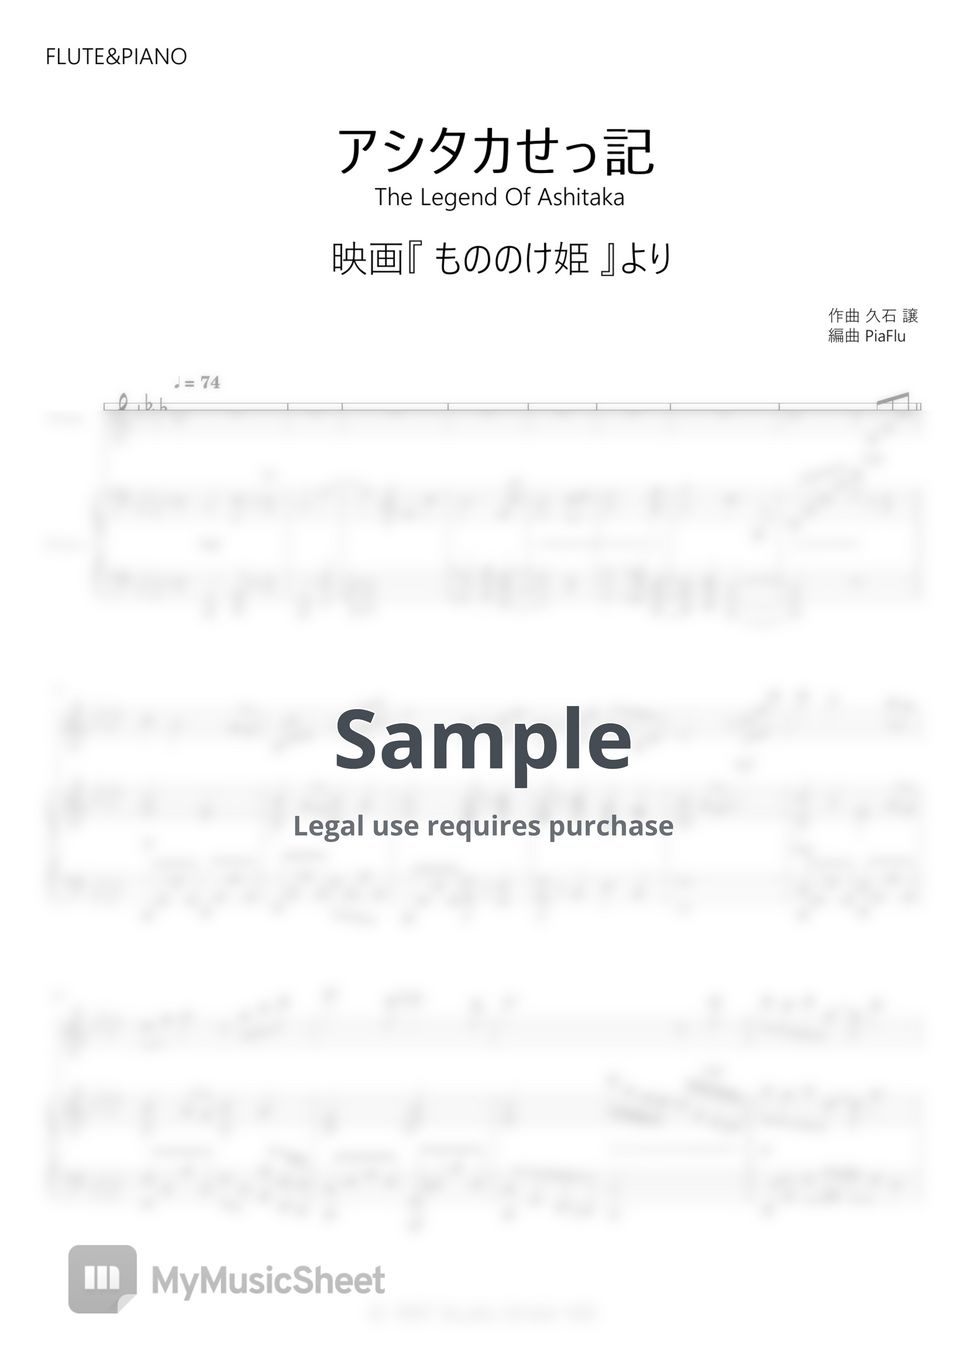 久石譲 - Joe Hisaishi - アシタカせっ記 / The Legend Of Ashitaka (Flute&Piano) by PiaFlu / ピアフル Piano&Flute